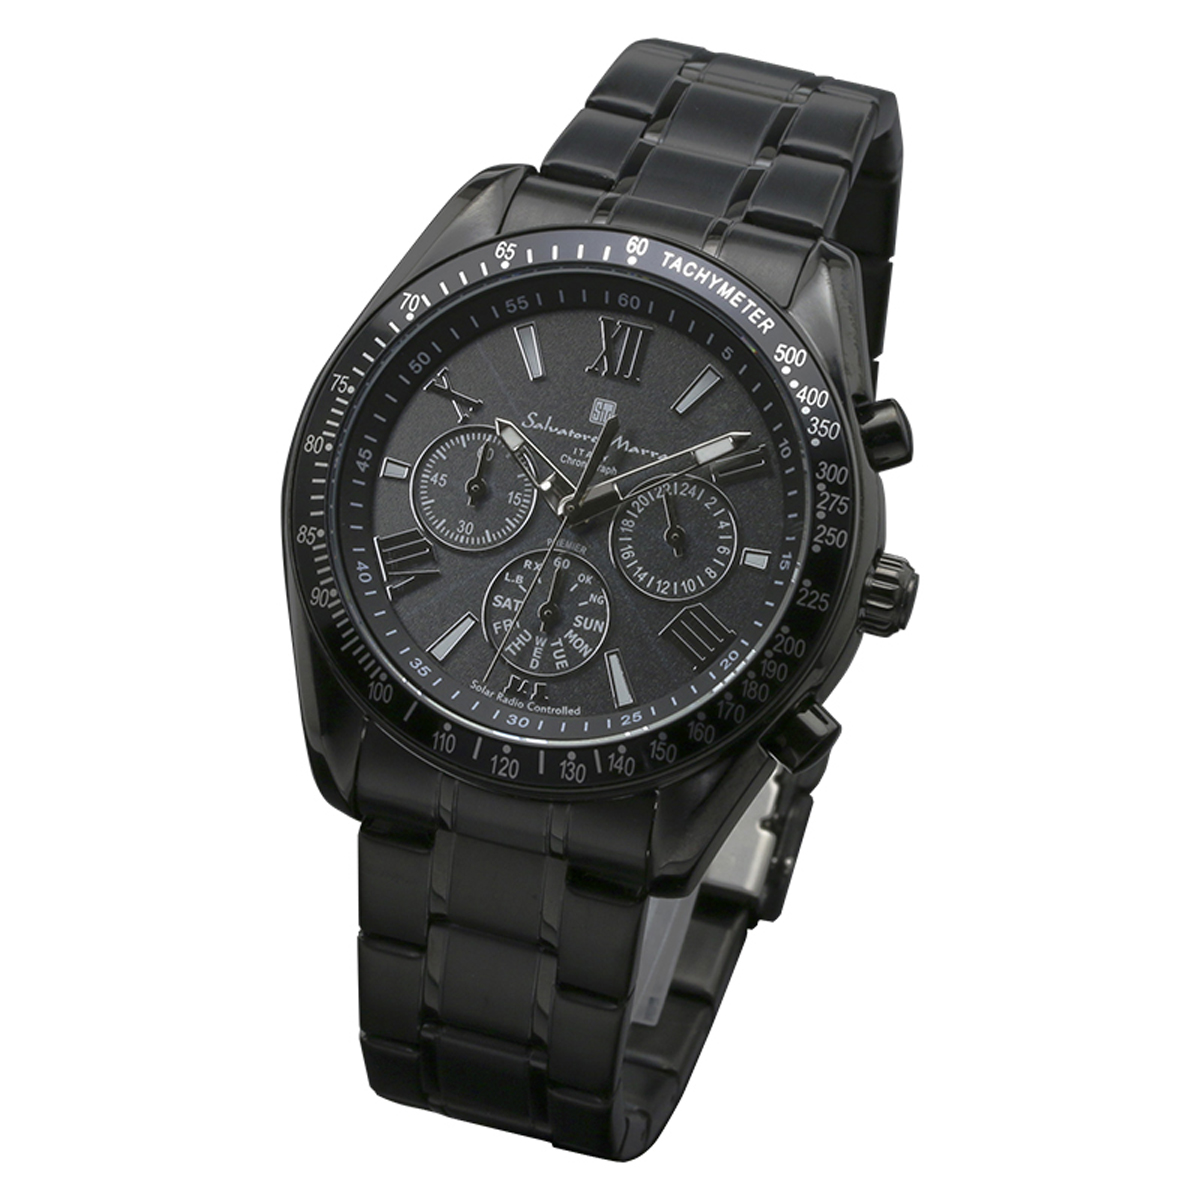 サルバトーレマーラ Salavatore Marra 腕時計 SM15116-BKBKSV クオーツ クロノグラフ 電波ソーラー メンズ腕時計 ステンレスベルト 腕時